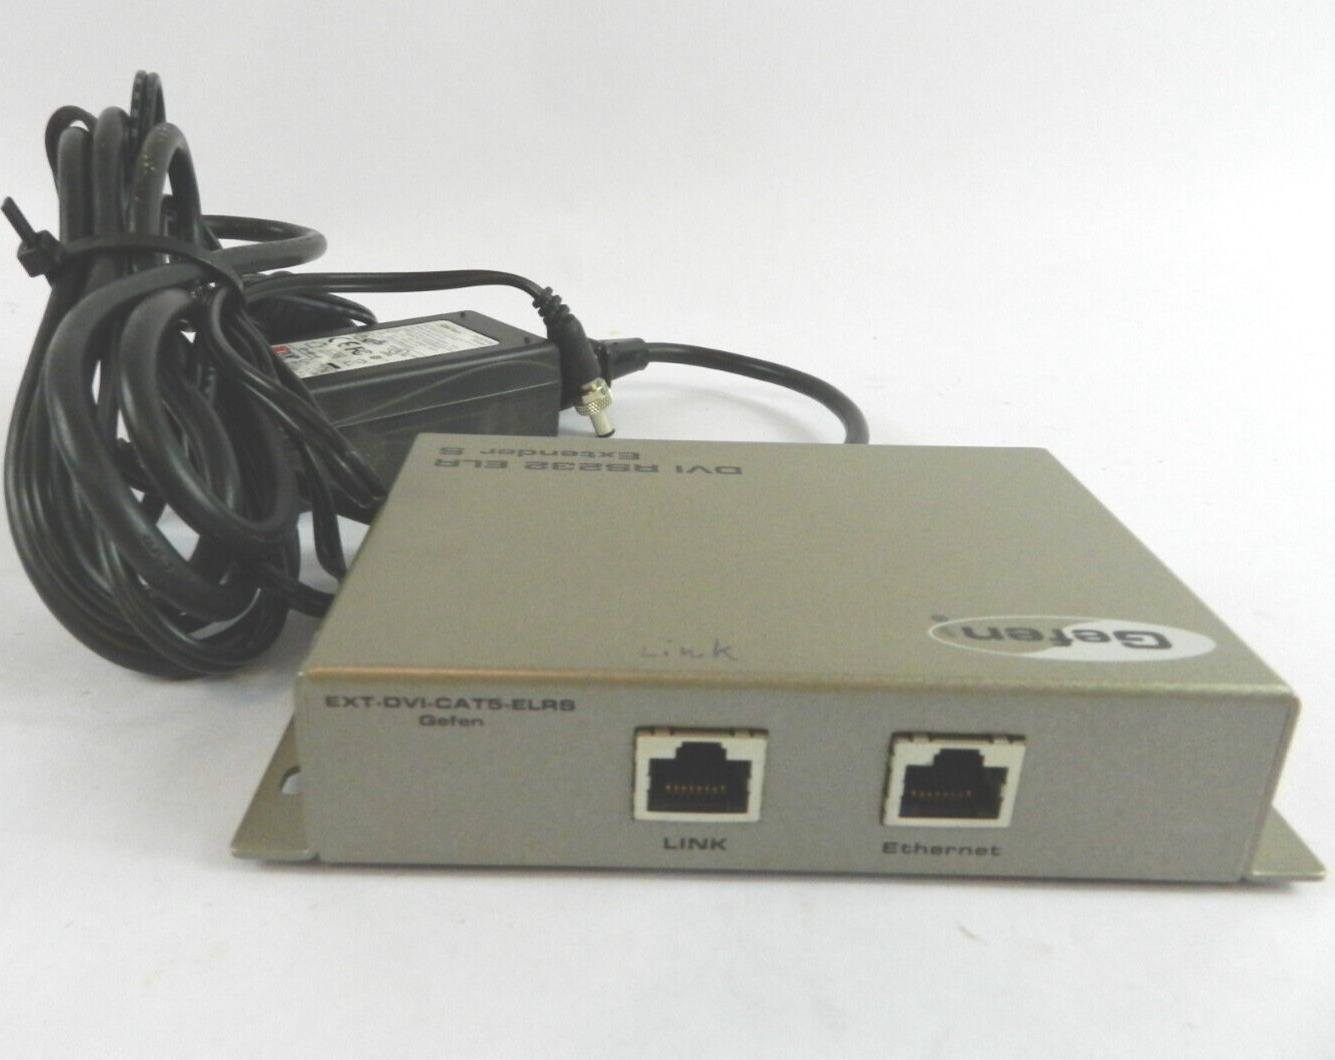 Gefen EXT-DVI-CAT5-ELR DVI RS232 ELR Extender S Sender with Power Supply B1